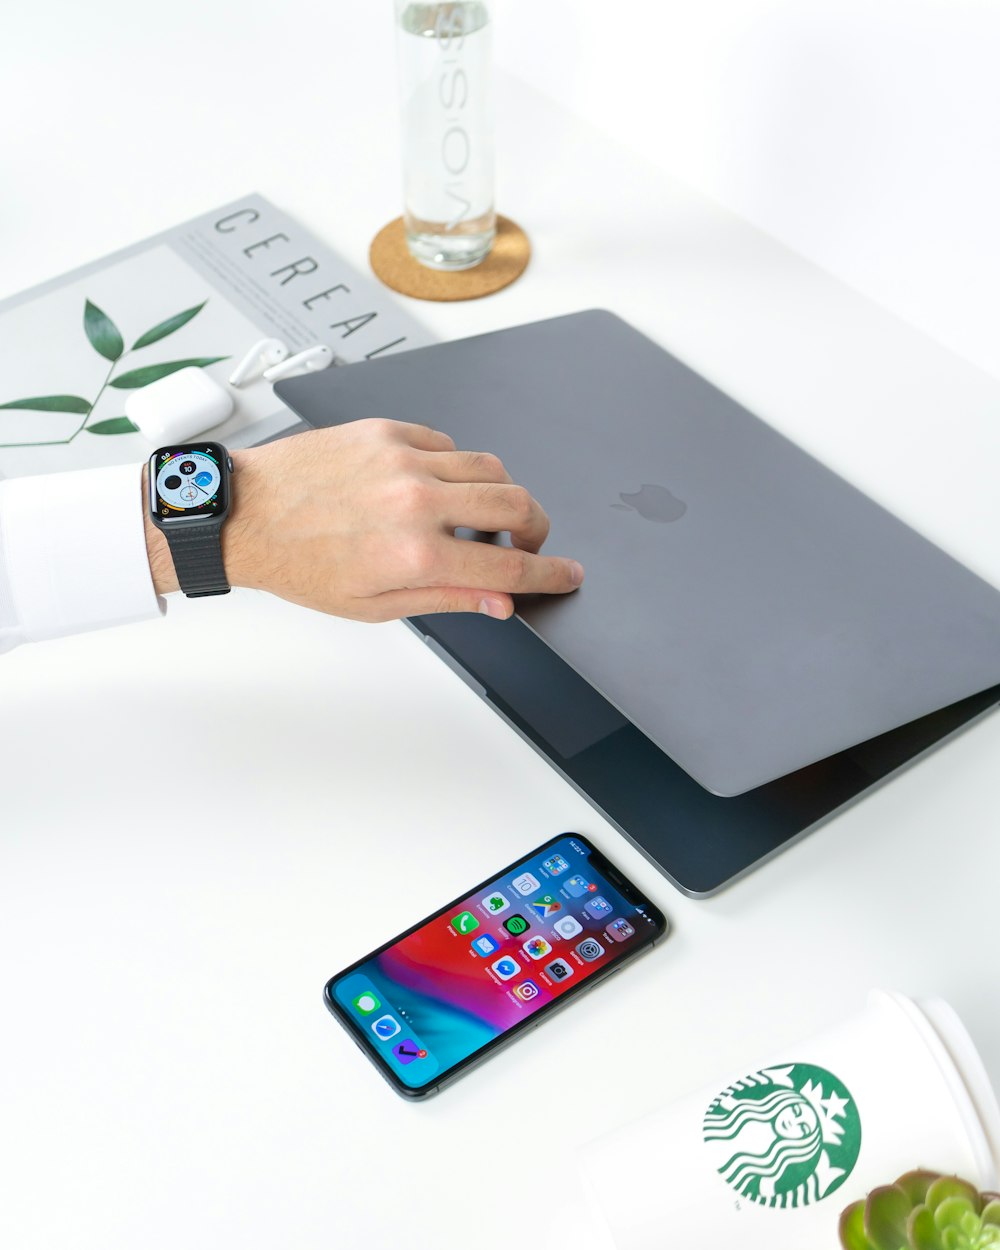 흰색 나무 테이블에 iPhone 옆에 회색 MacBook을 여는 사람